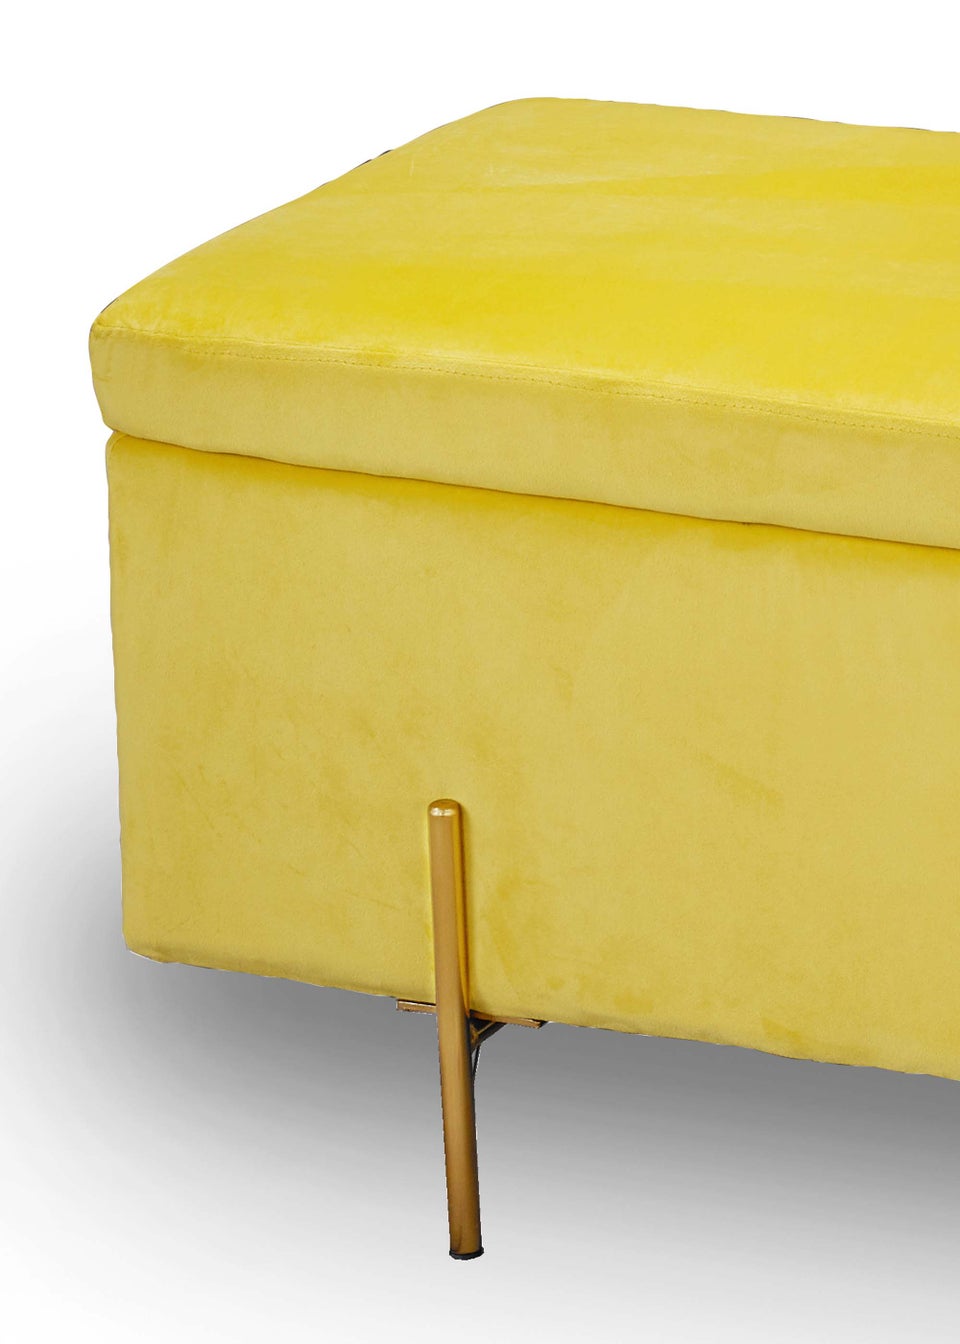 LPD Furniture Lola Storage Ottoman Mustard (450x1150x450mm)